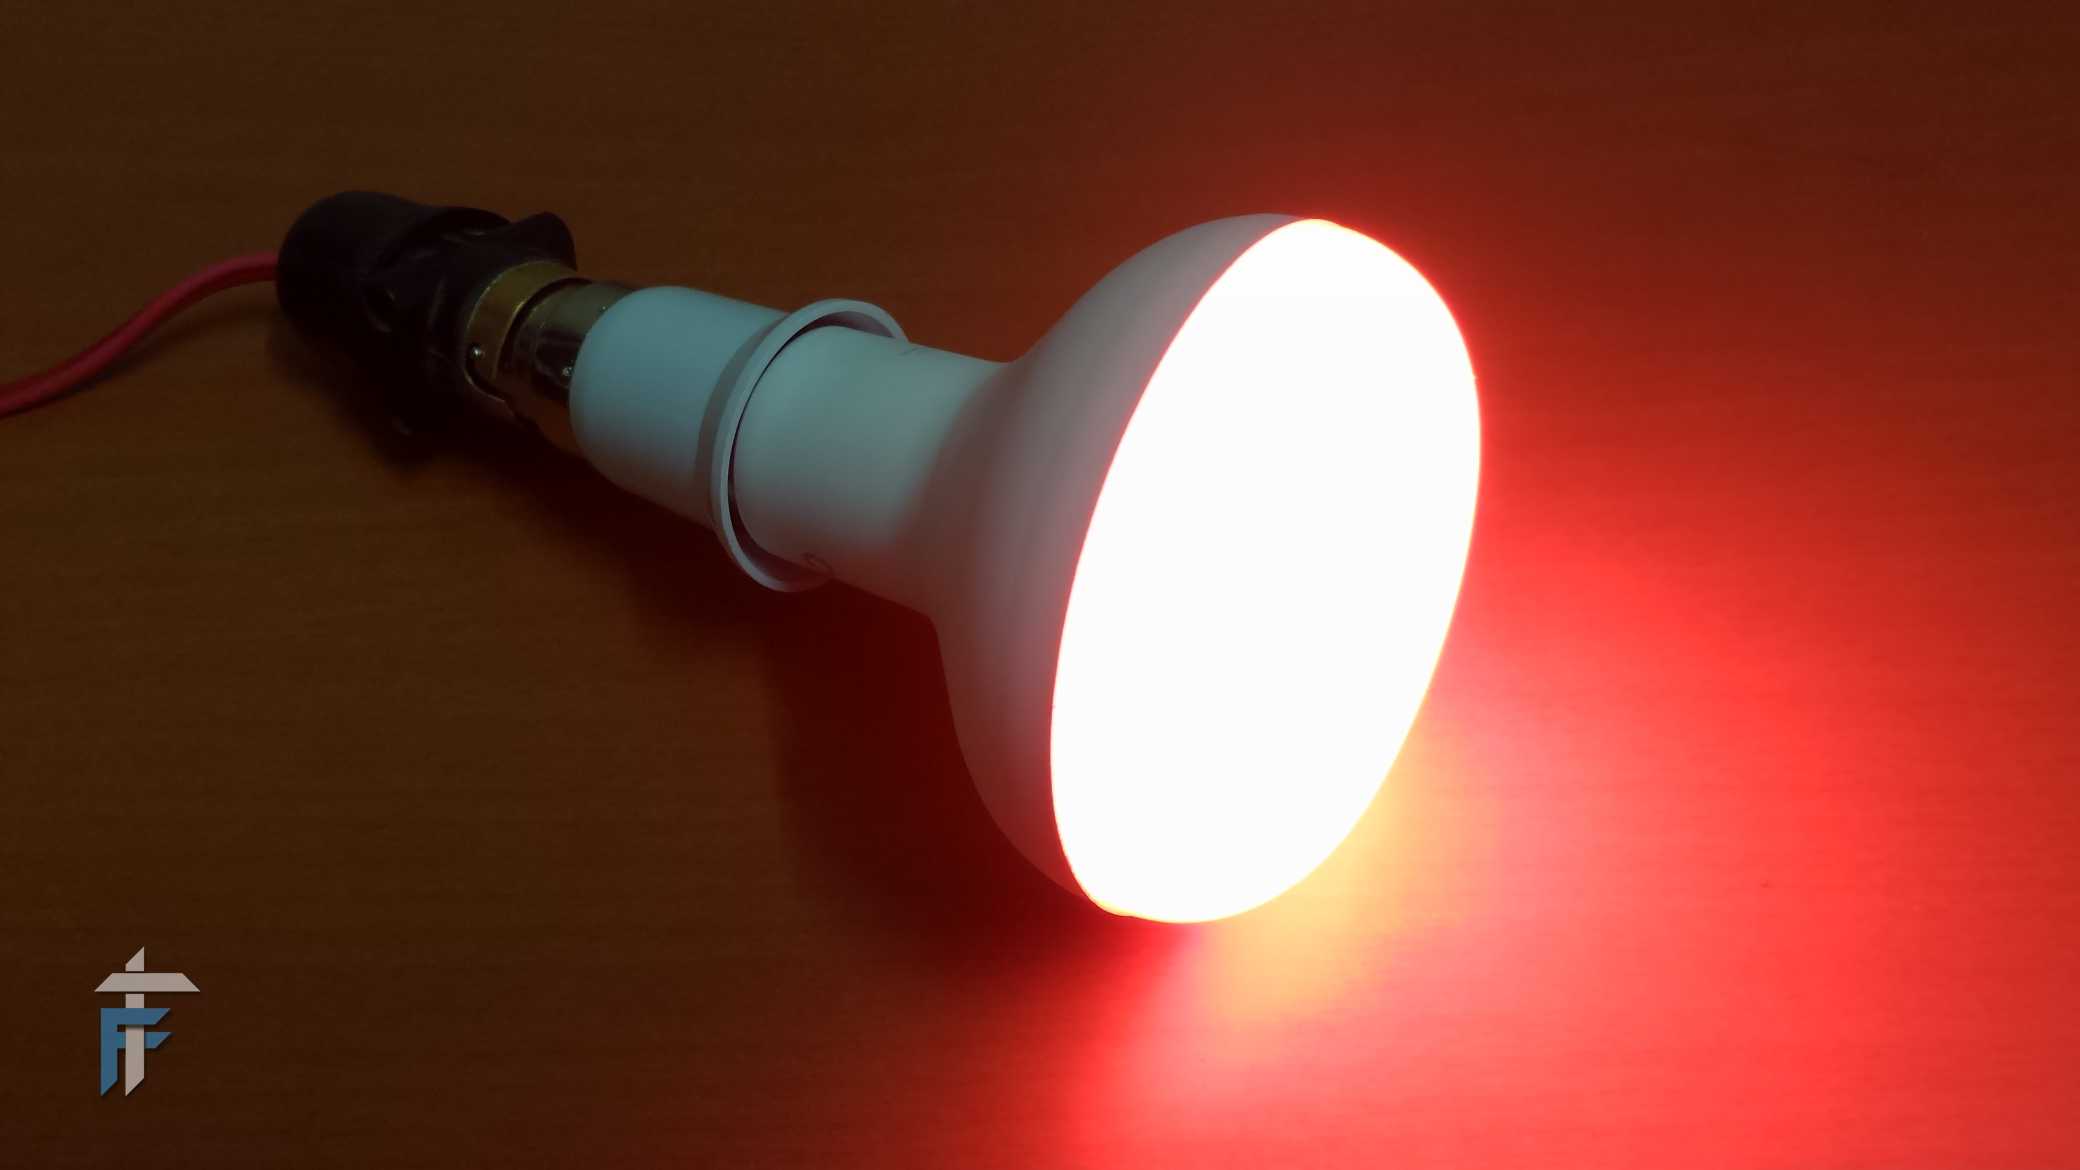 REOS lite LED smart bulb full review